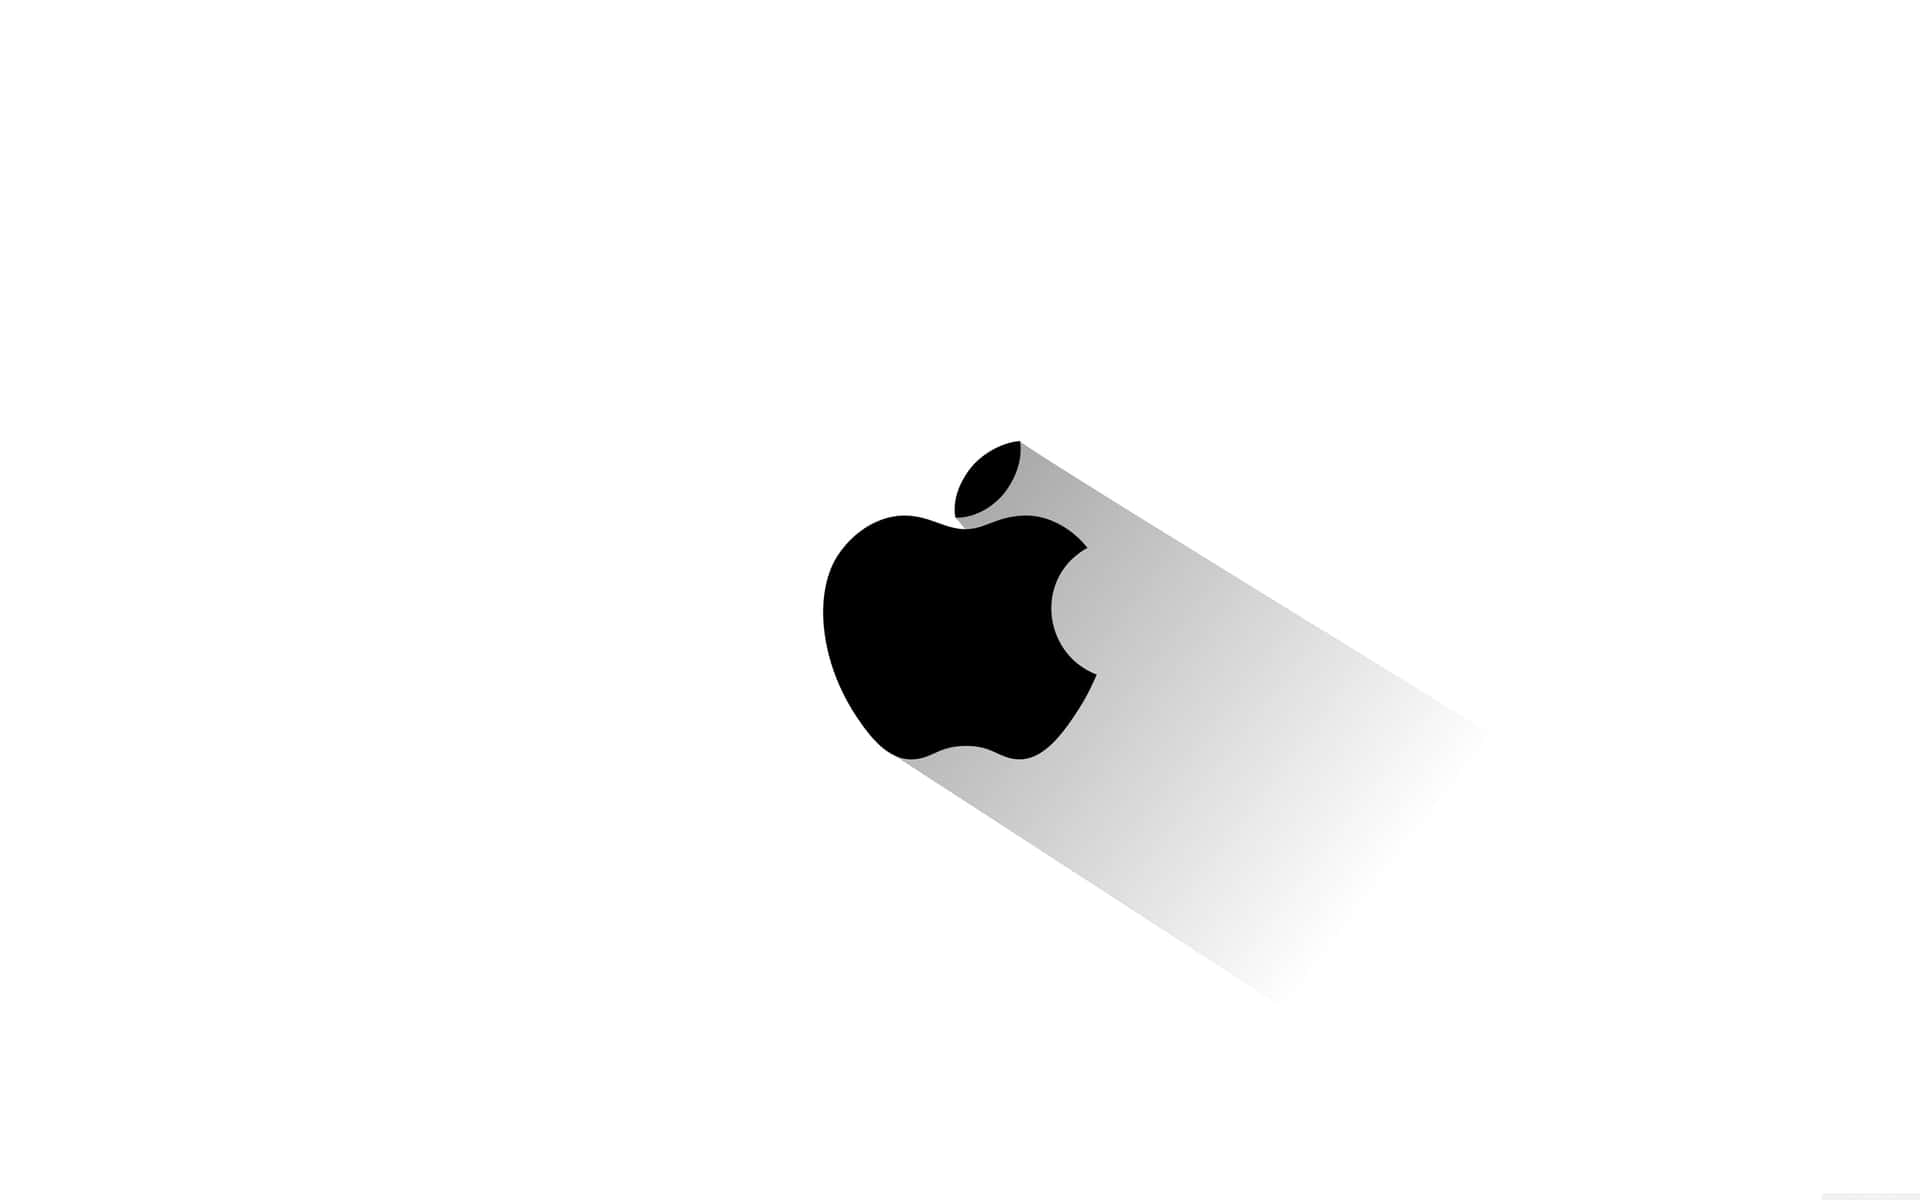 Logode Apple Mac Con Sombra De Escritorio Fondo de pantalla